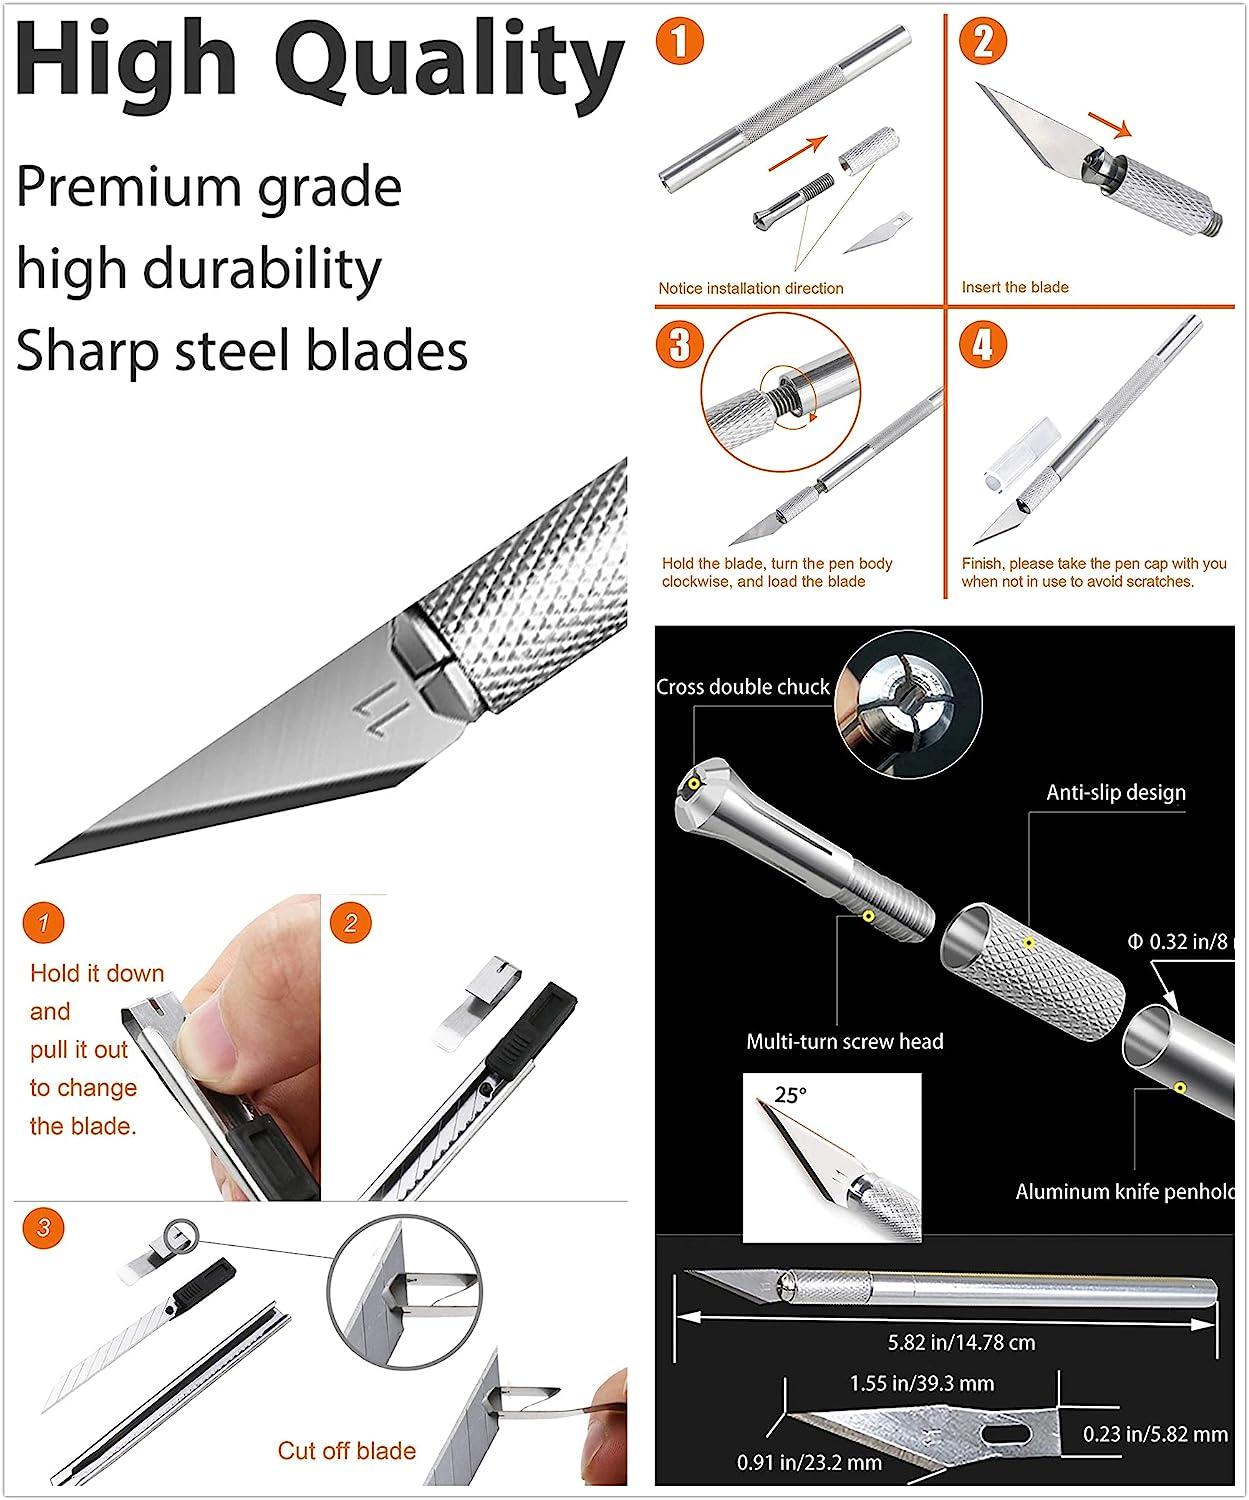 Exacto Cutting Knife, Multi-purpose Knife, Hobby Knife, Blades Set